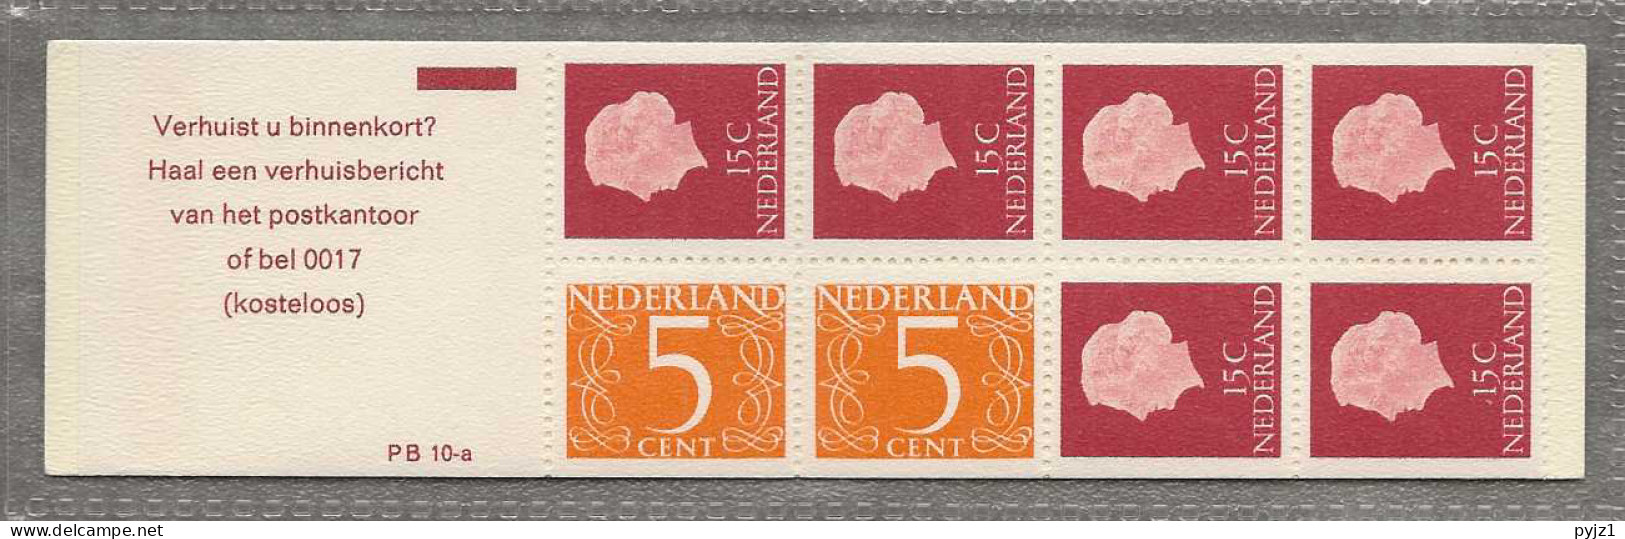 1971 MNH Nederland NVPH PB 10aF - Booklets & Coils